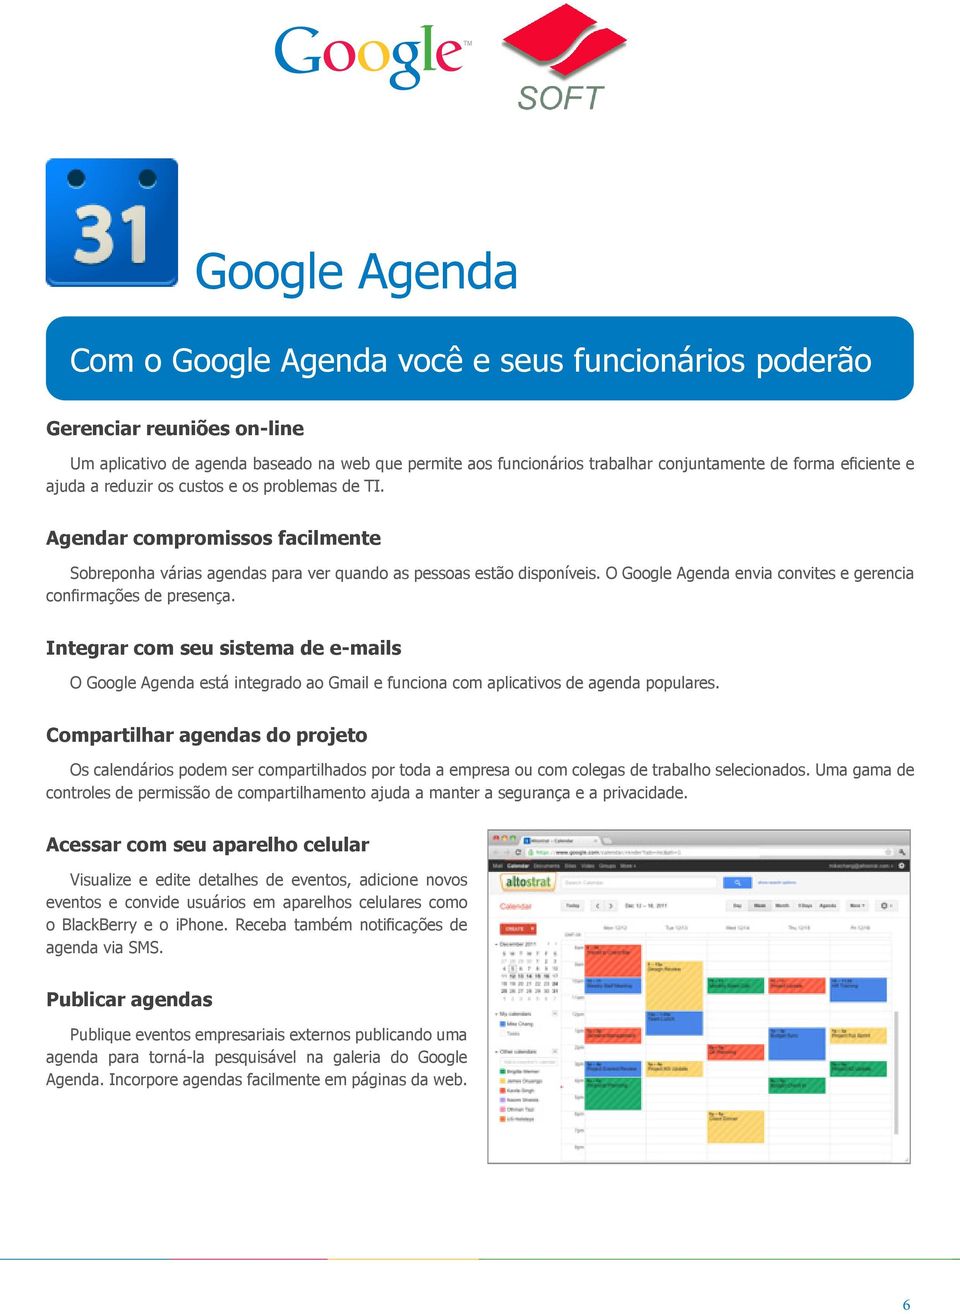 O Google Agenda envia convites e gerencia confirmações de presença. Integrar com seu sistema de e-mails O Google Agenda está integrado ao Gmail e funciona com aplicativos de agenda populares.